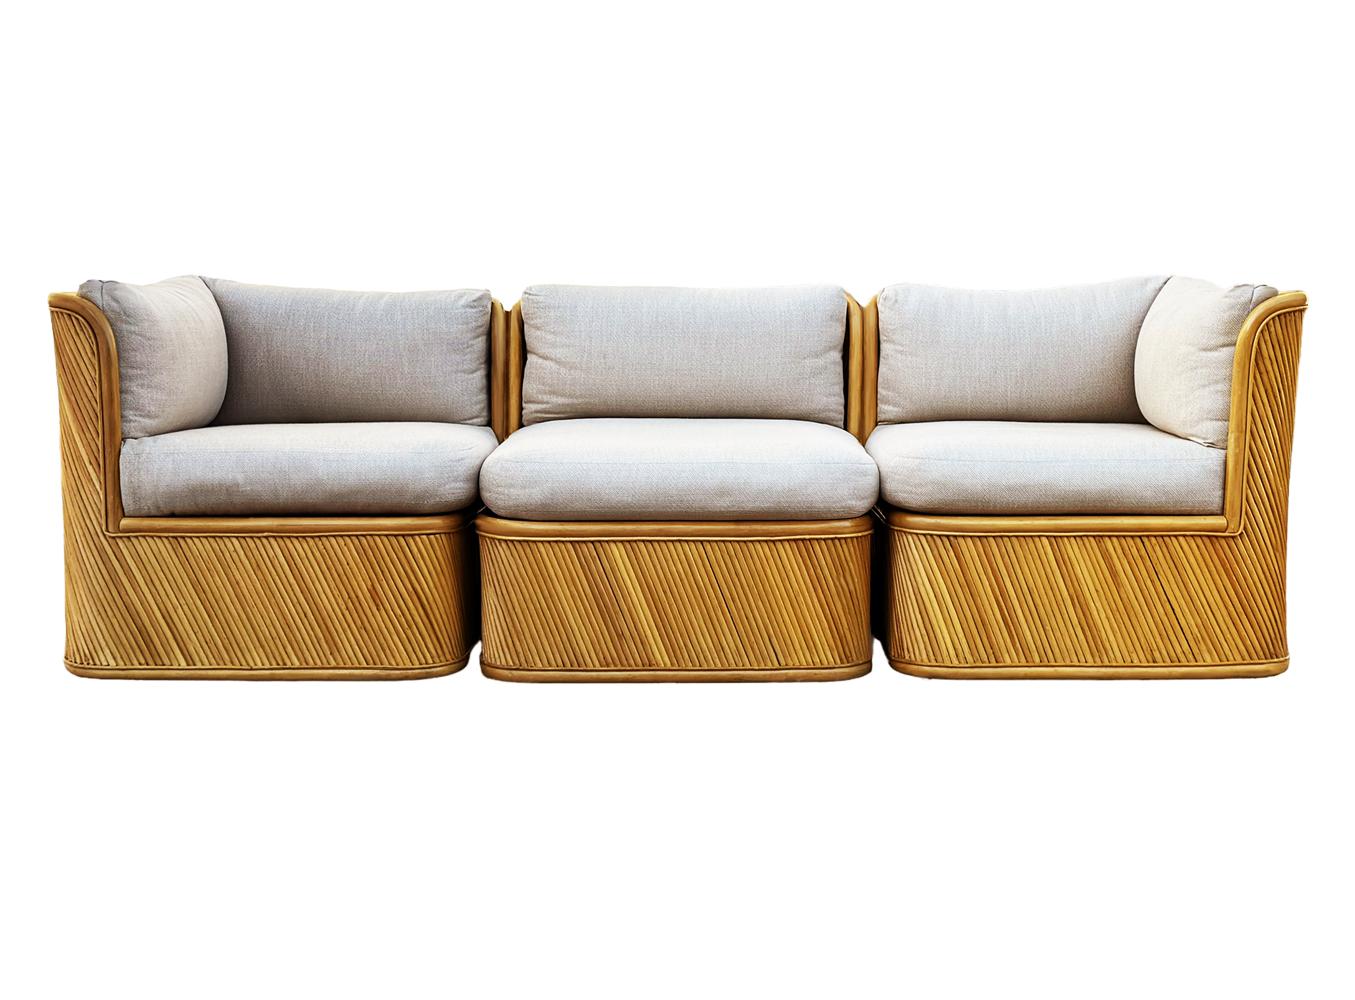 Un canapé élégant et sculptural fabriqué par Comfort Design/One Furniture dans les années 1970. Le canapé se caractérise par une construction lourde, un design sculptural et un revêtement en roseaux de bambou. Les coussins ont été récemment